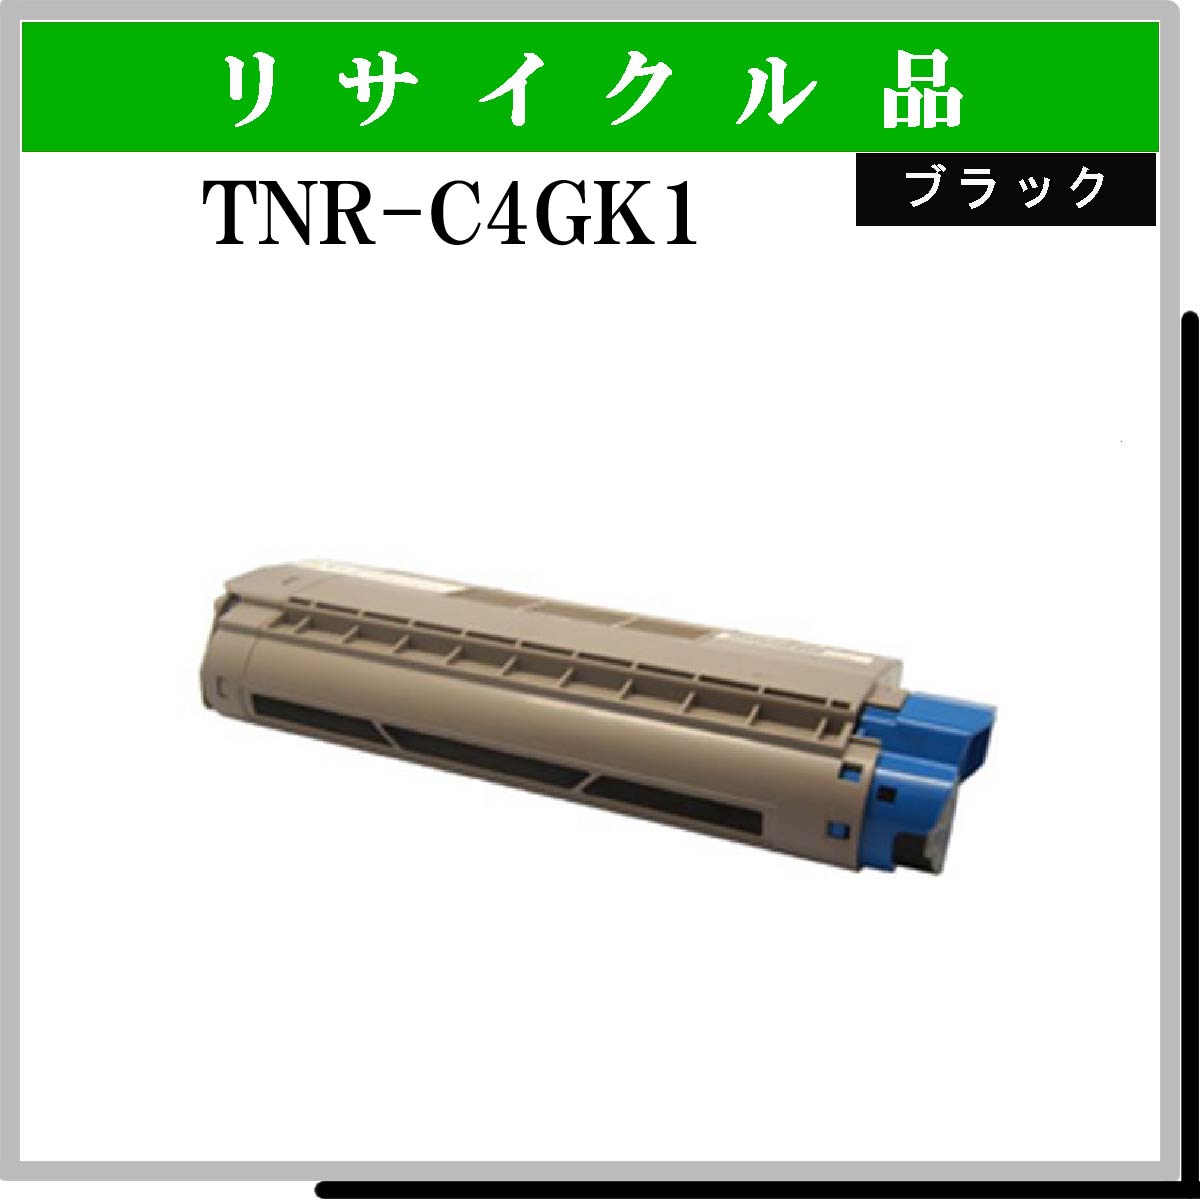 TNR-C4GK1